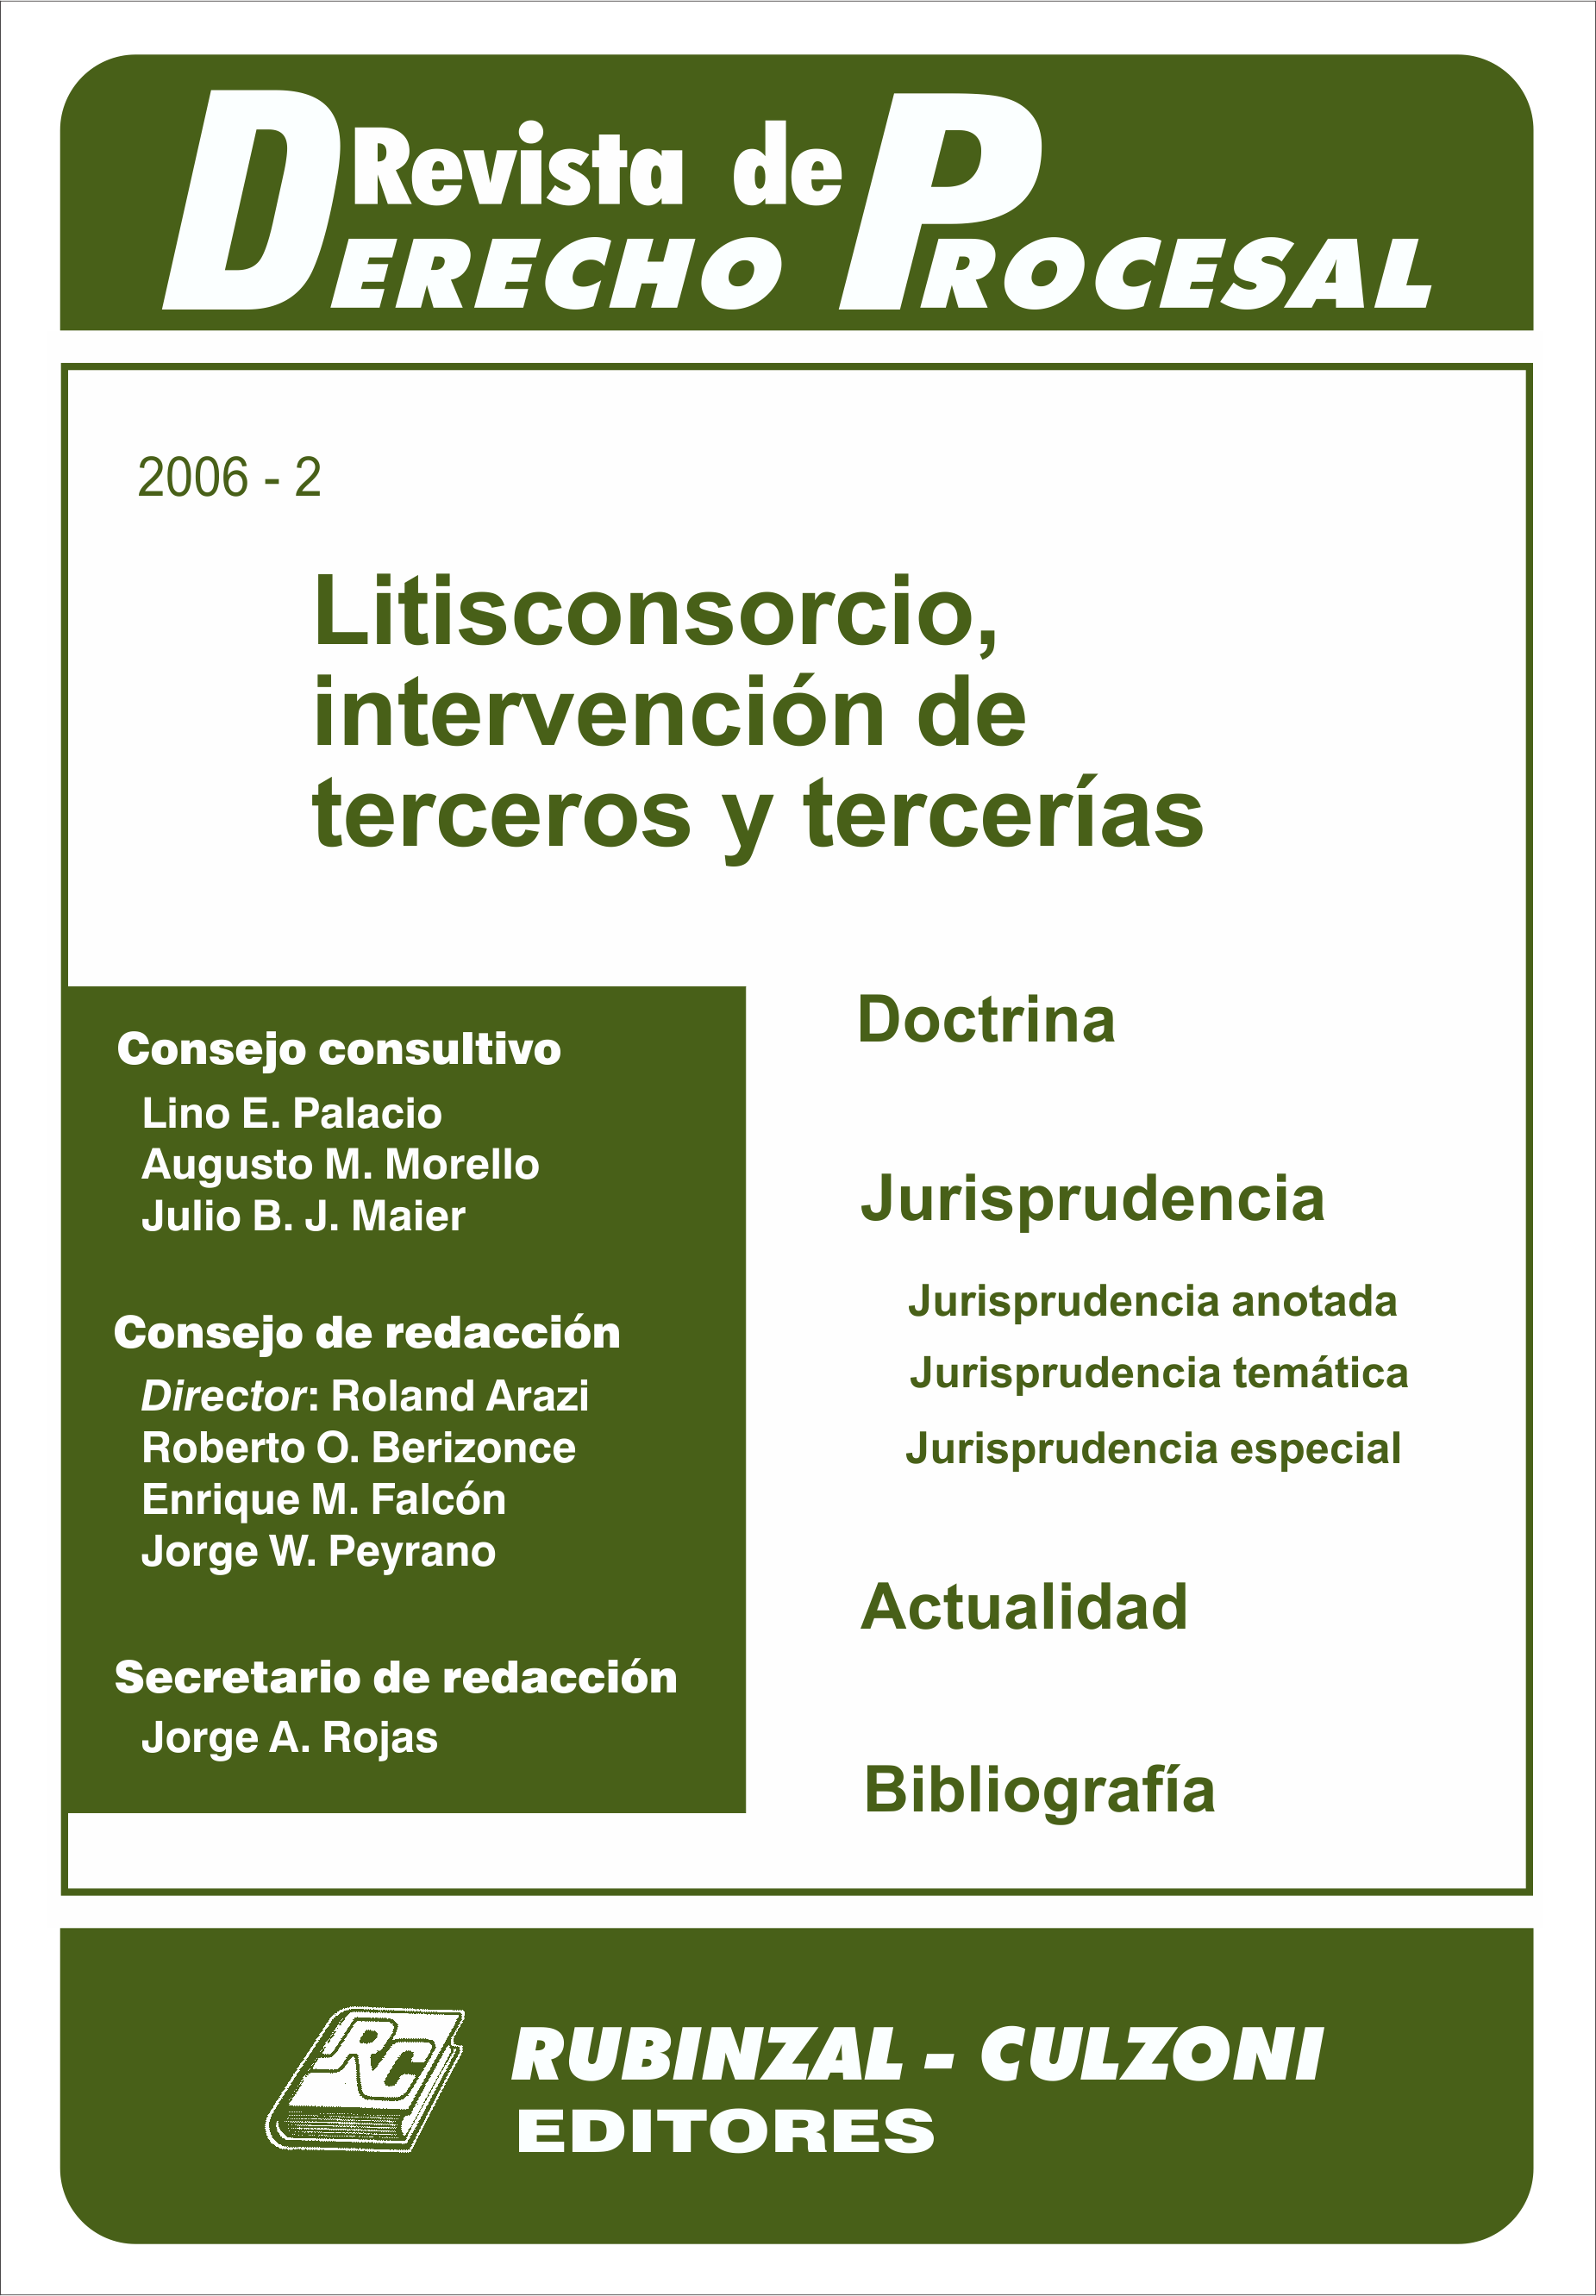 Revista de Derecho Procesal - Litisconsorcio, intervención de terceros y tercerías.